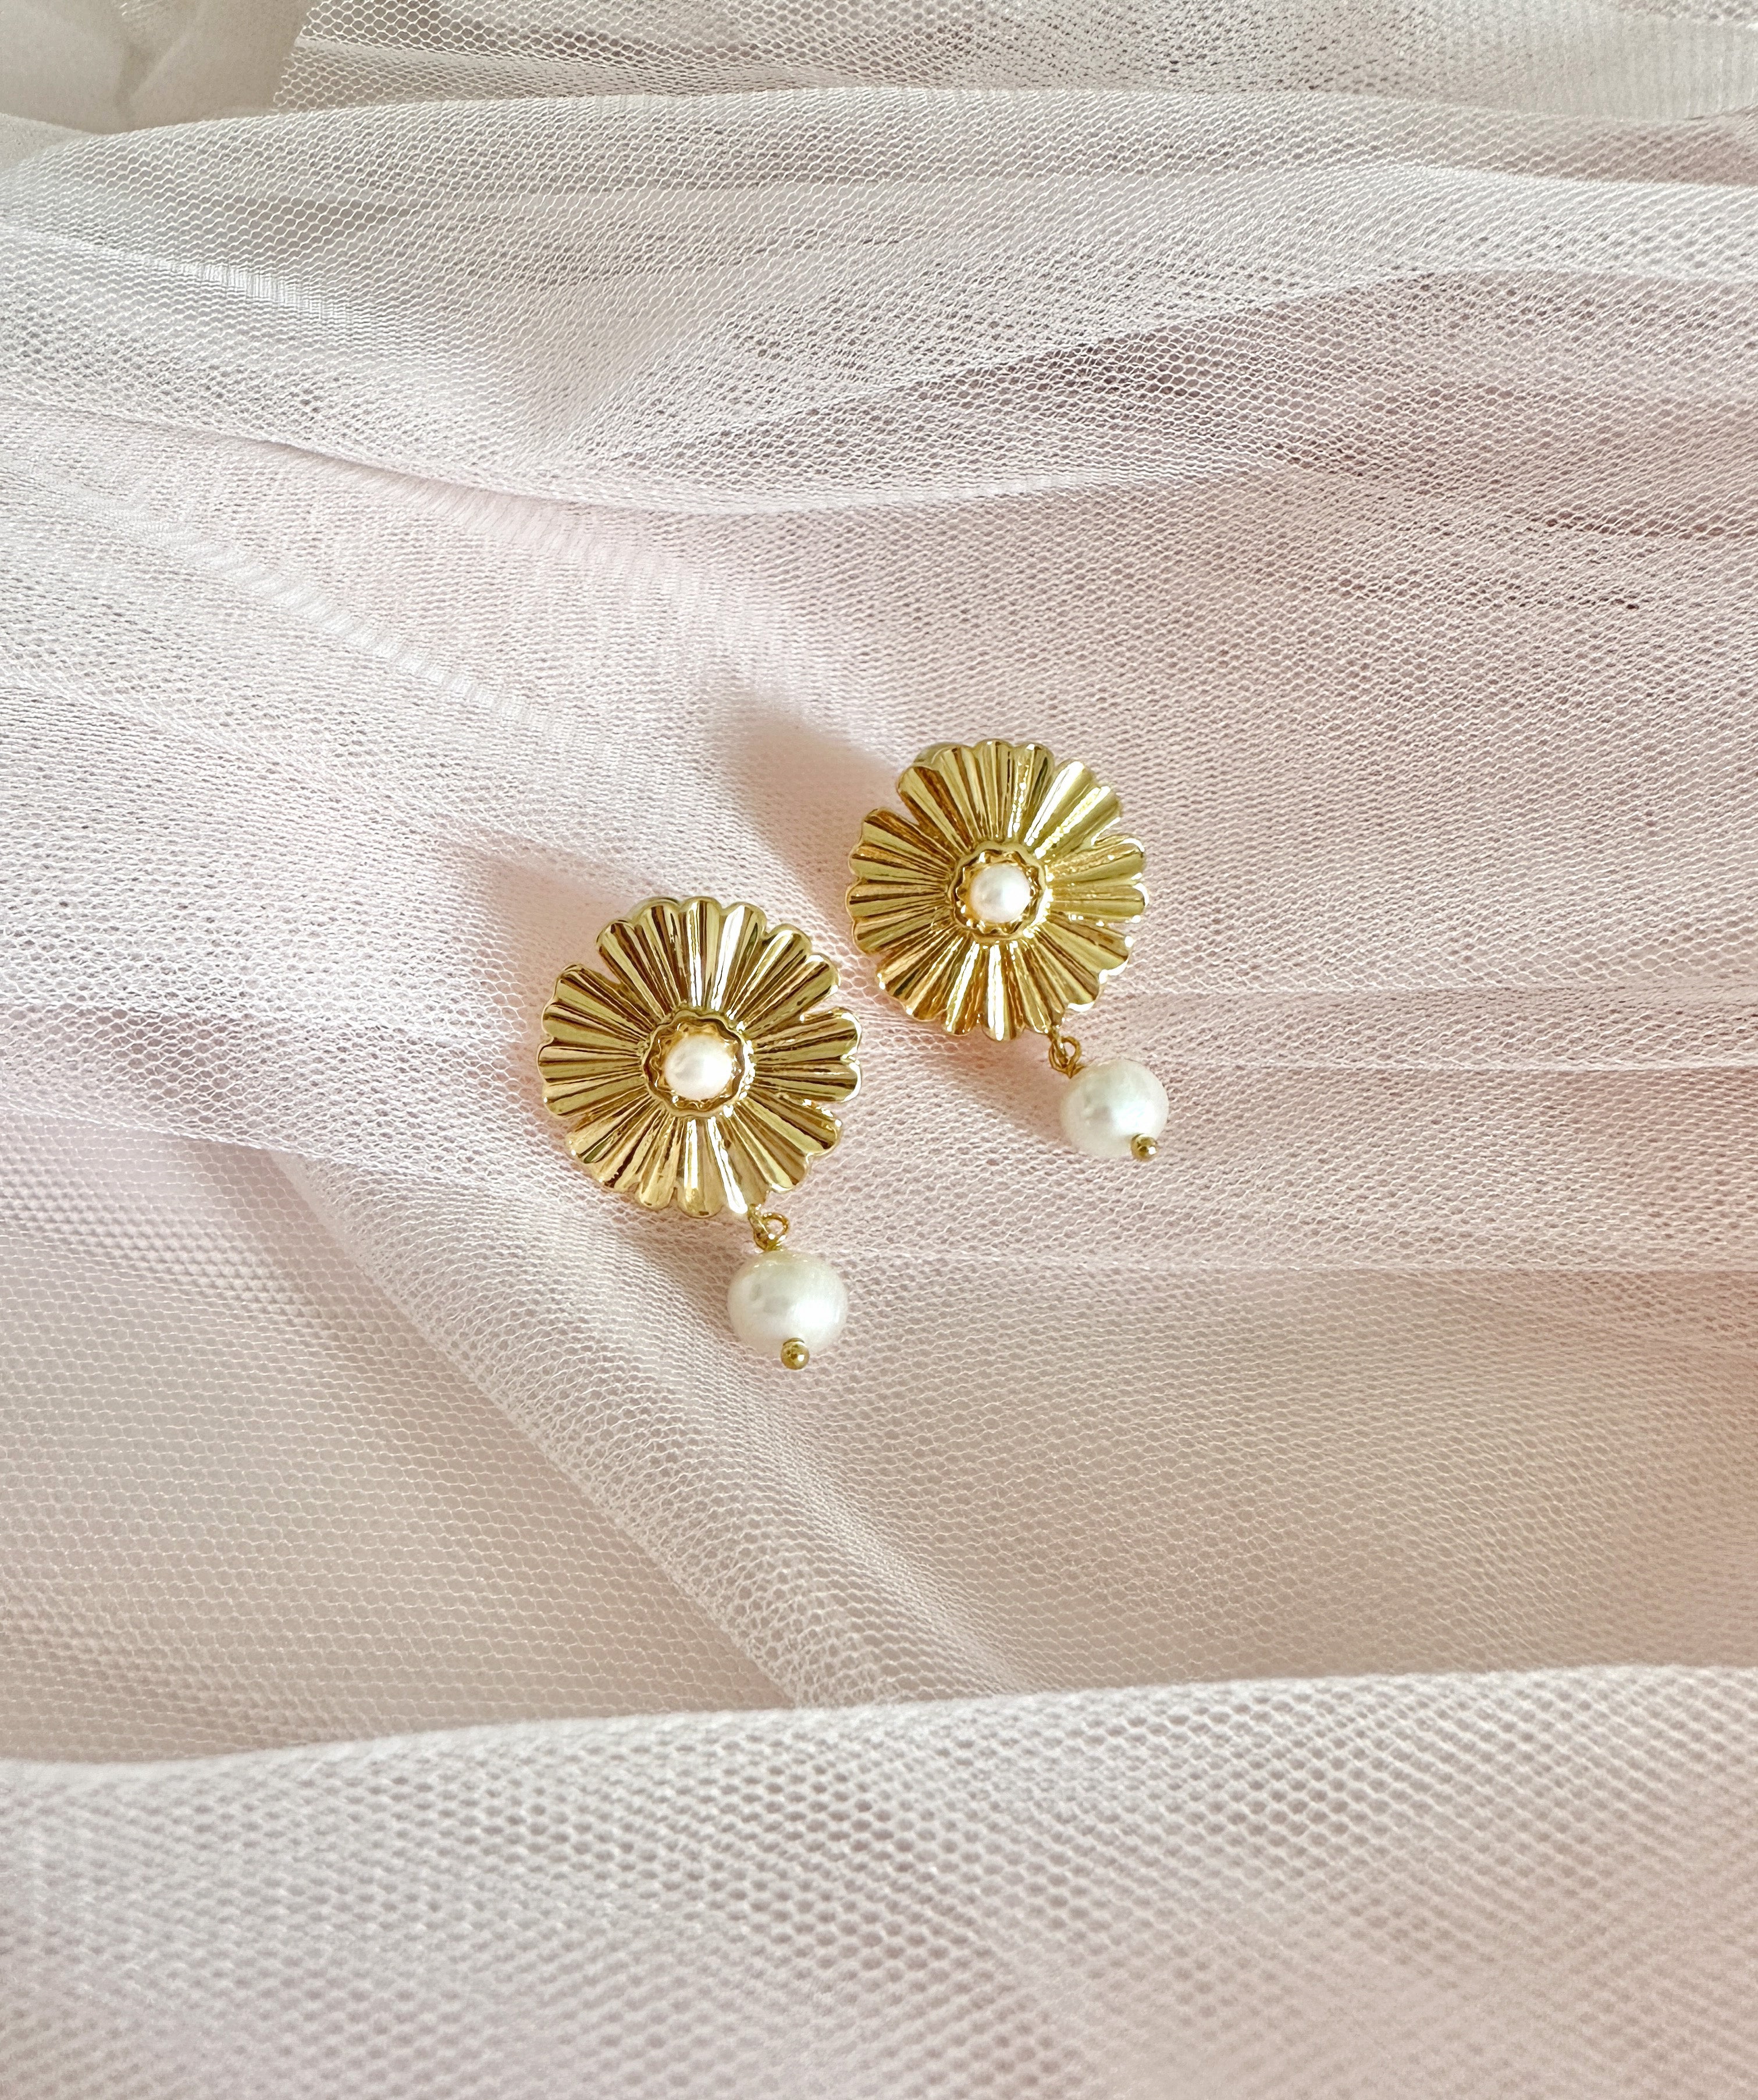 The “Oceana” Fleur Earrings